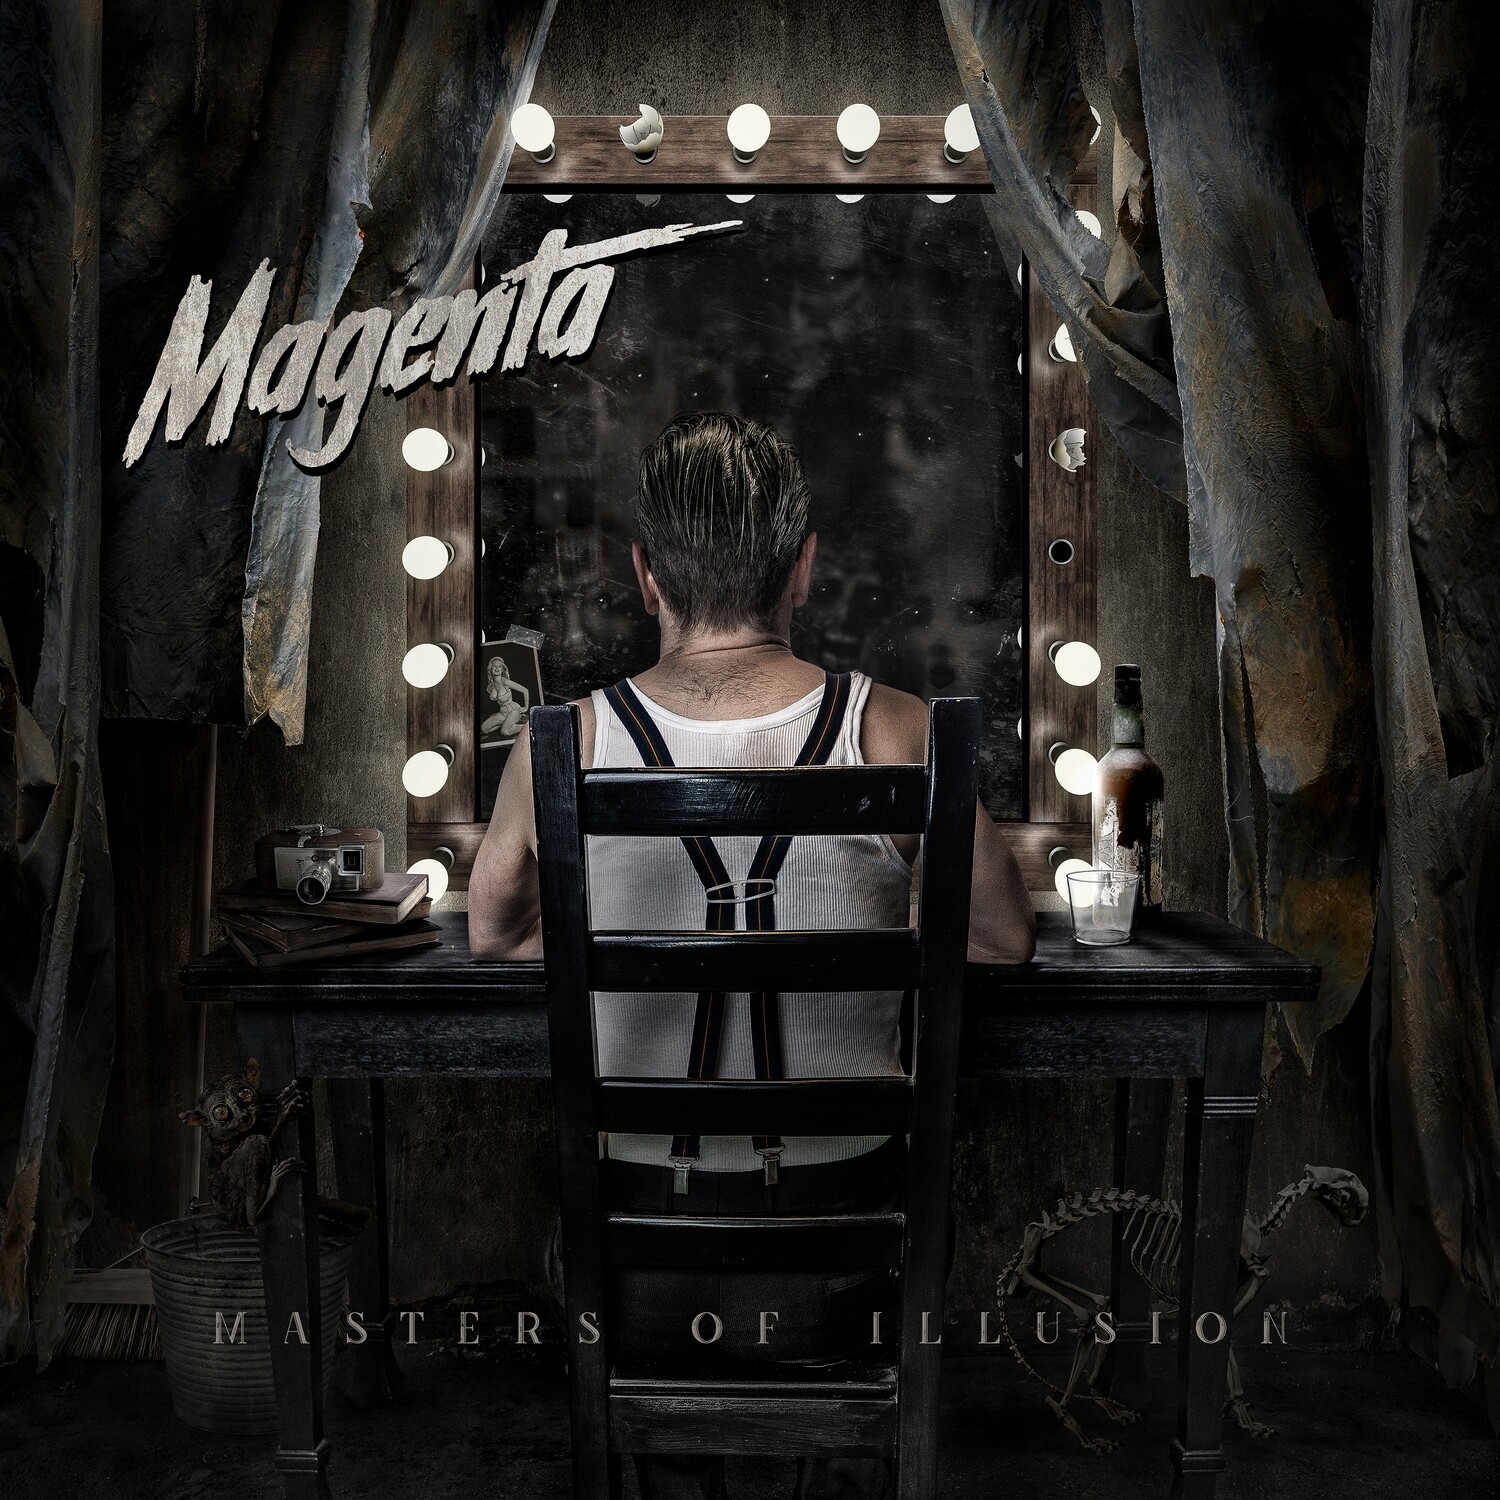 Magenta Masters Of Illusion Album Review